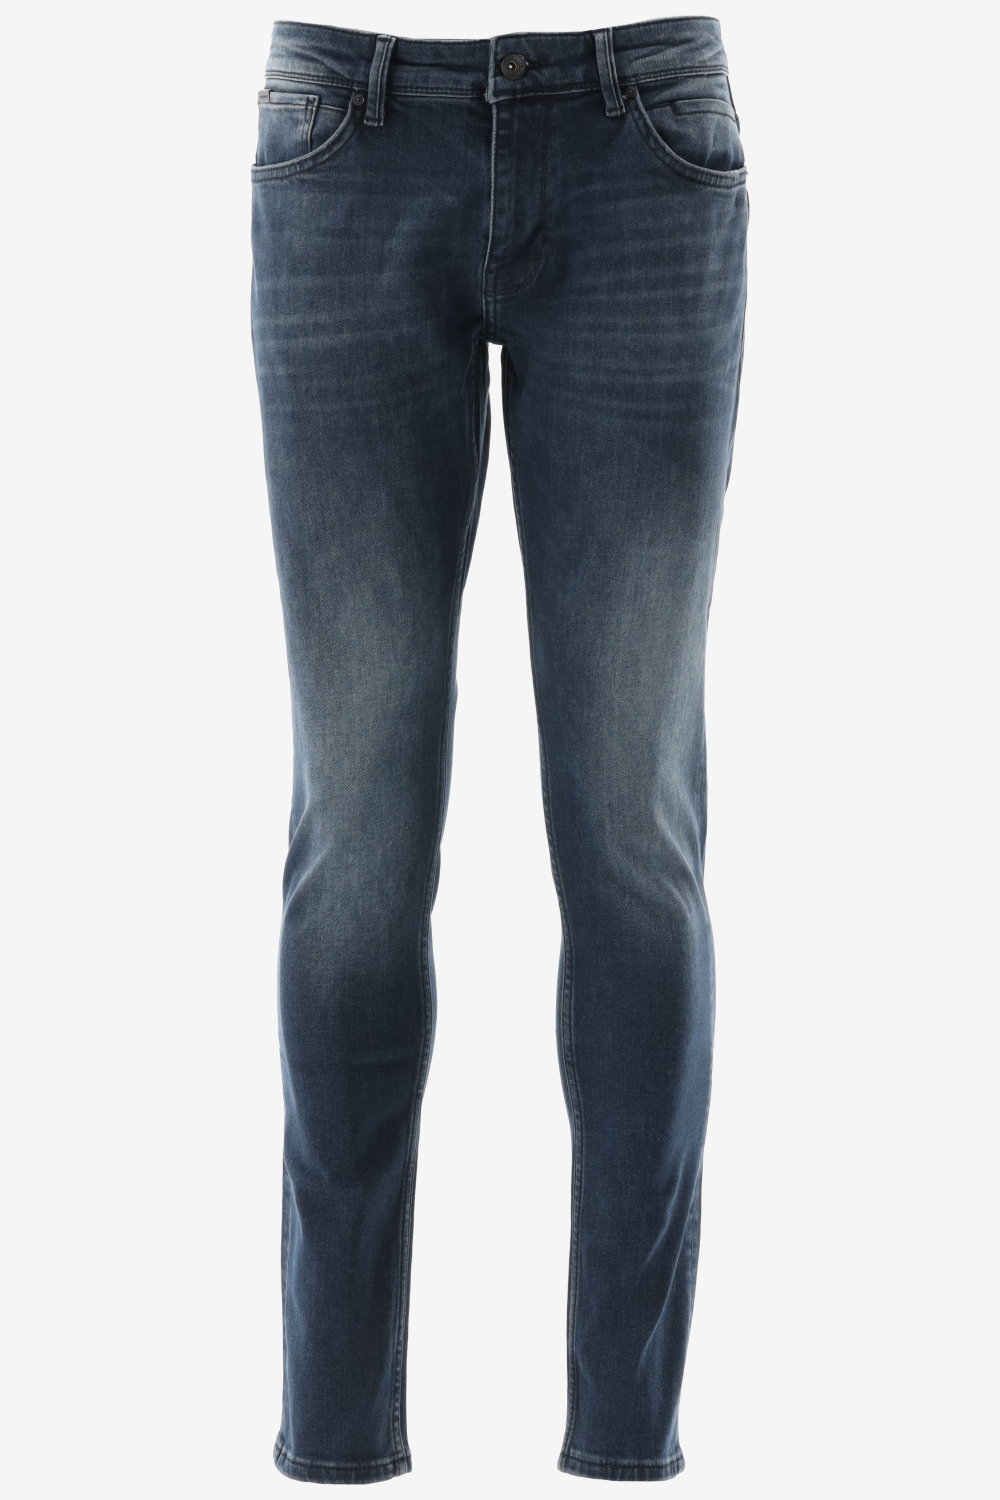 Purewhite - Jone Skinny Fit Heren Skinny Fit Jeans - Blauw - Maat 34